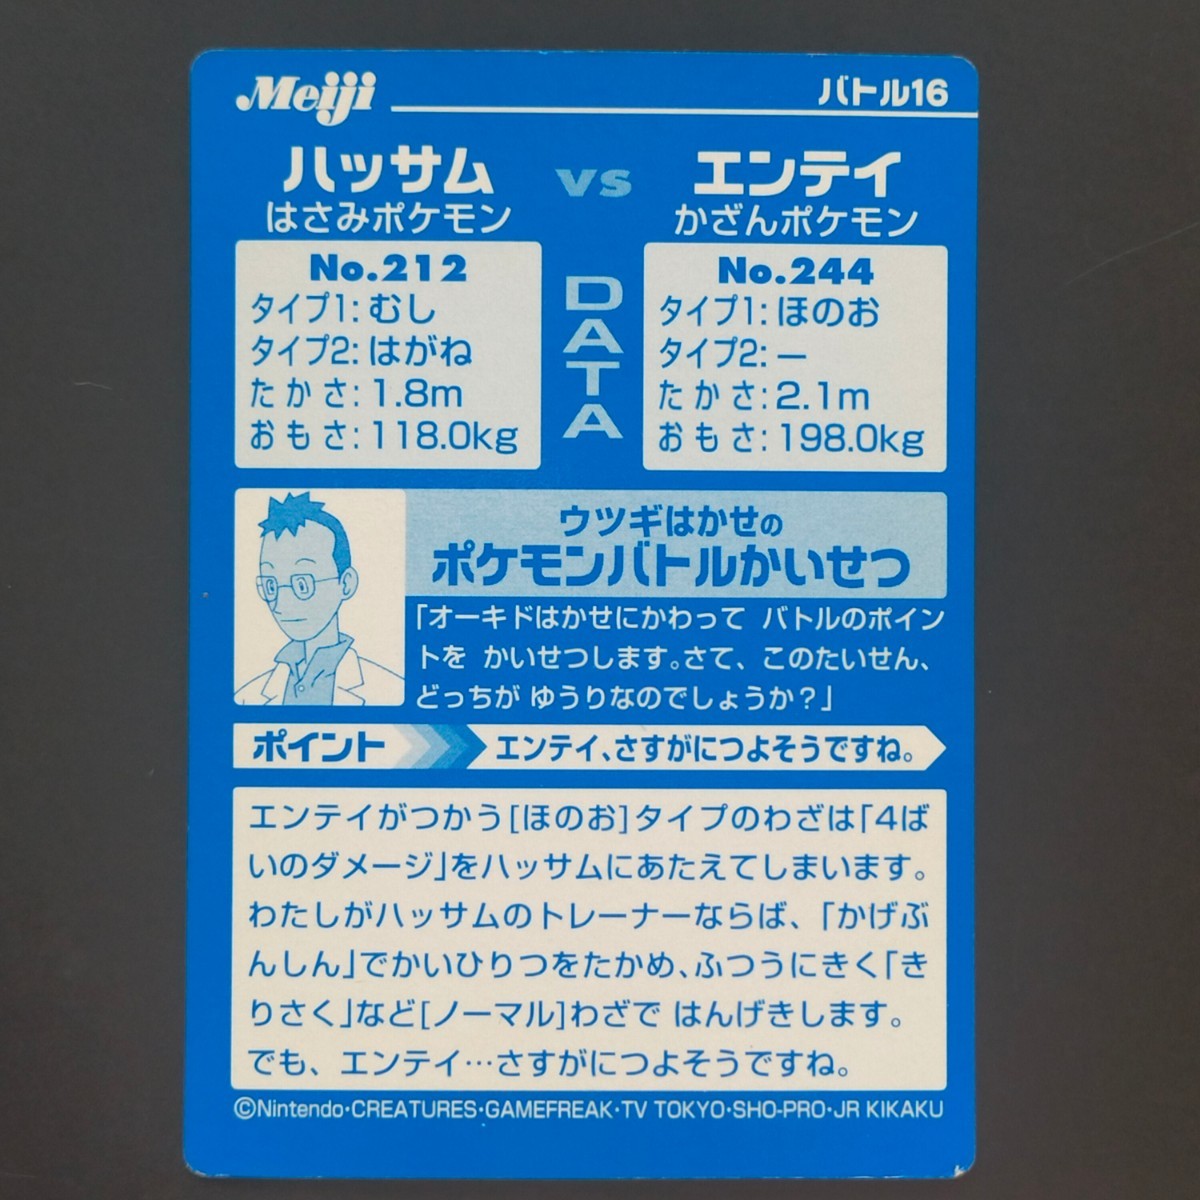 ハッサム VS エンテイ 明治 Meiji ポケモン ゲット カード バトル16 キラ HASSAM vs ENTEI アドバンスジェネレーション_画像4